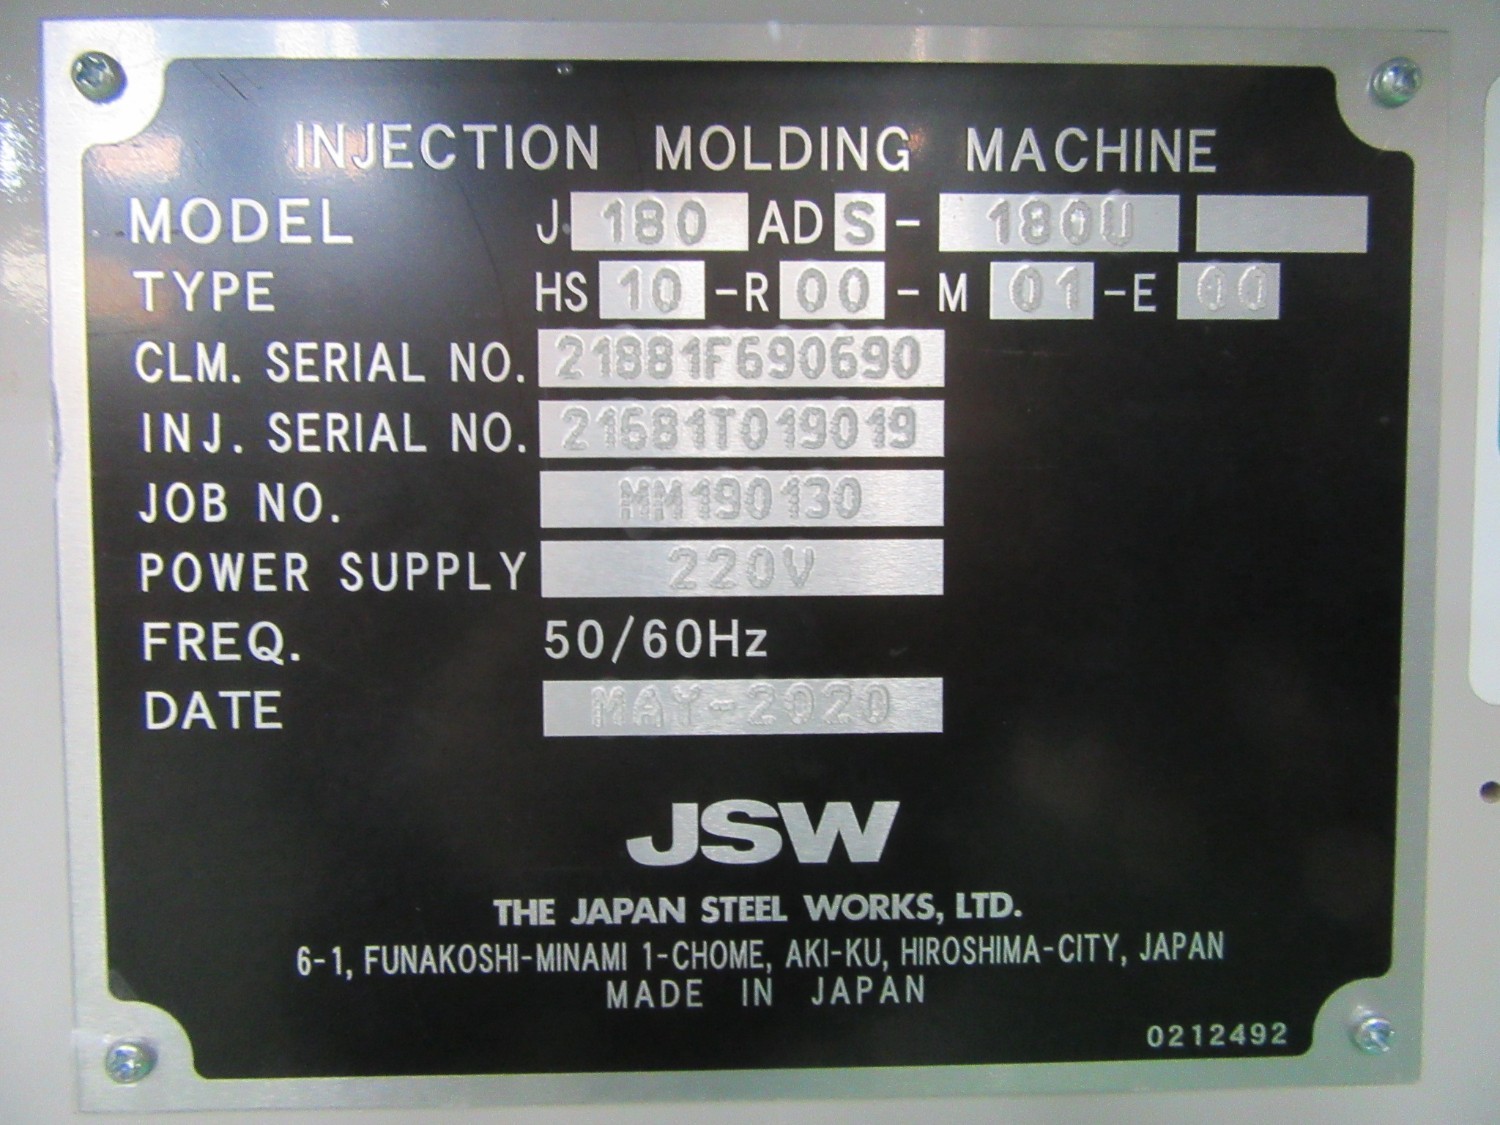 中古射出成形機 【180ｔ射出成形機】J180ADS-180U JSW